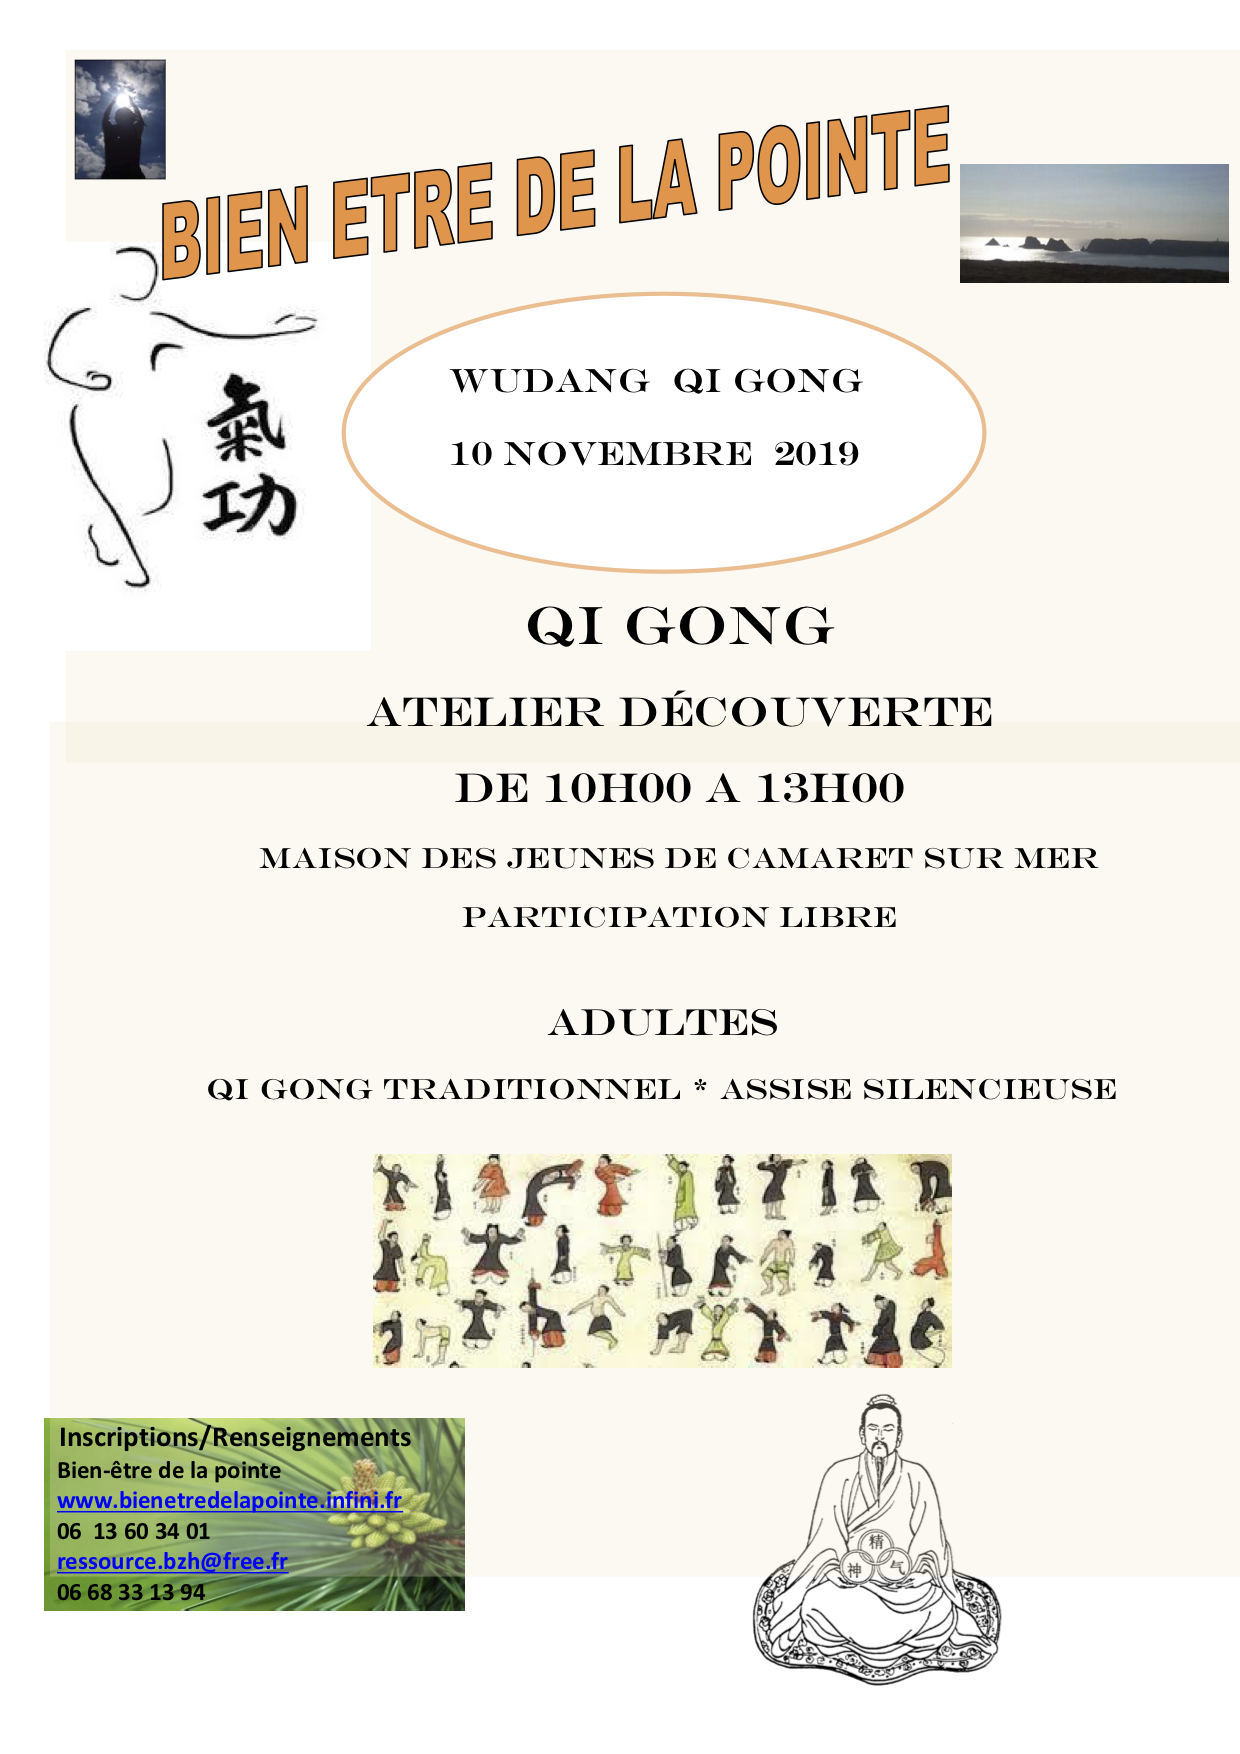 Atelier Wudang Qi Gong